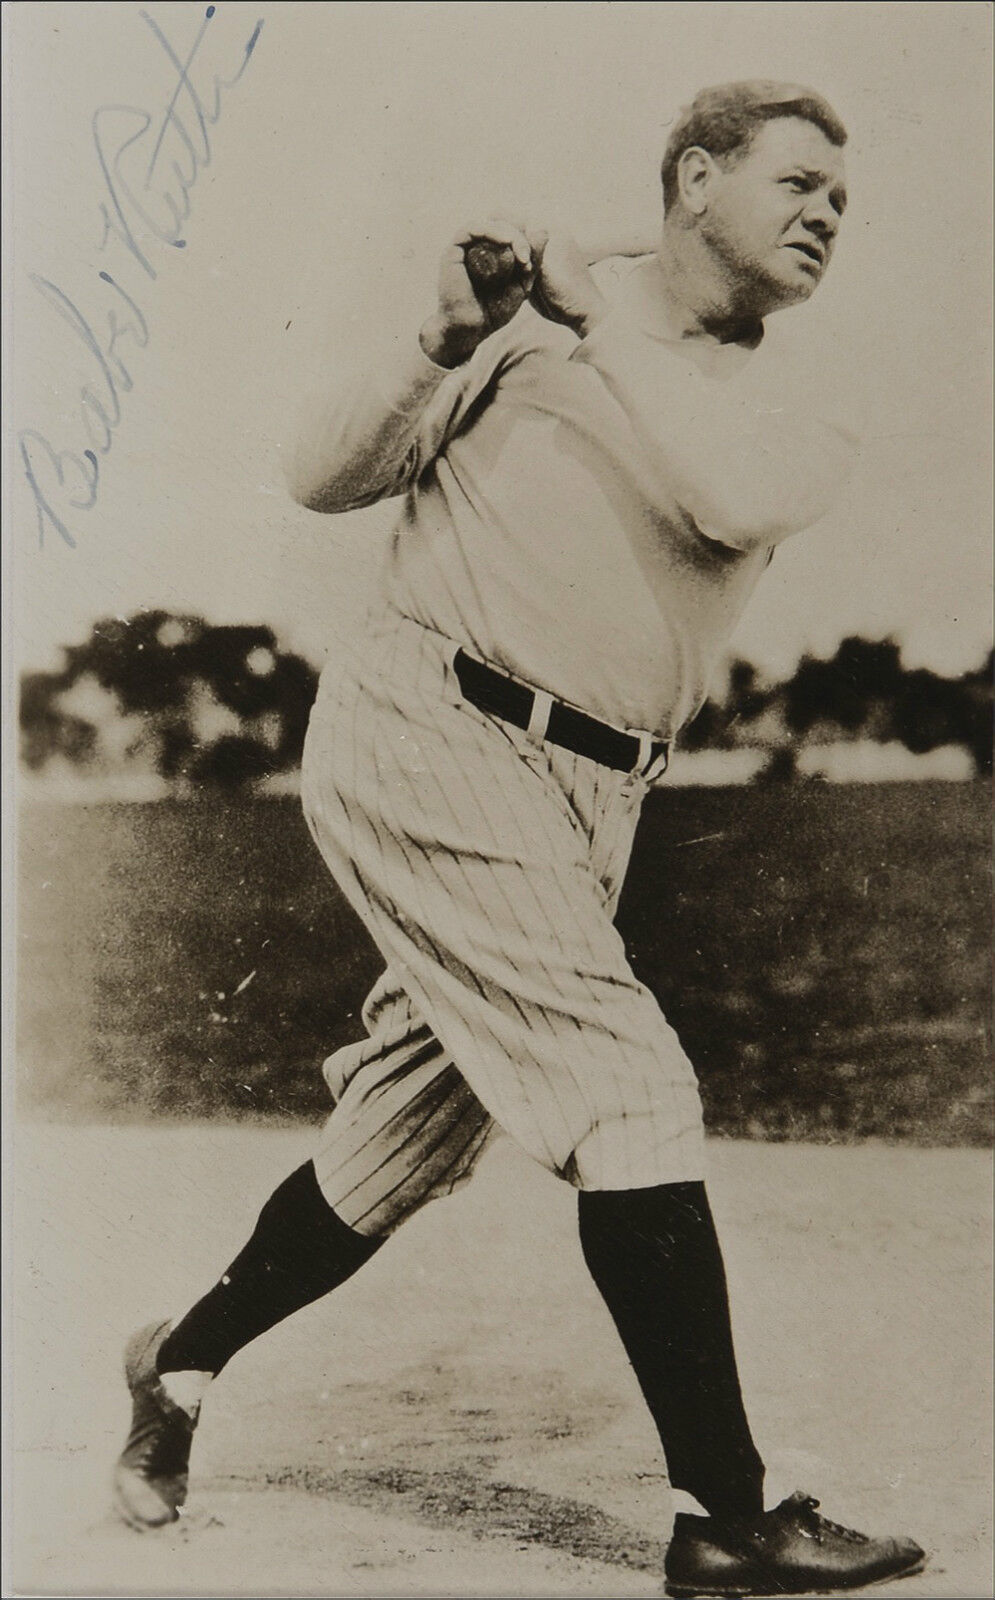 BABE RUTH Signed Photo Poster paintinggraph - former US Baseball Player NY Yankees - Preprint